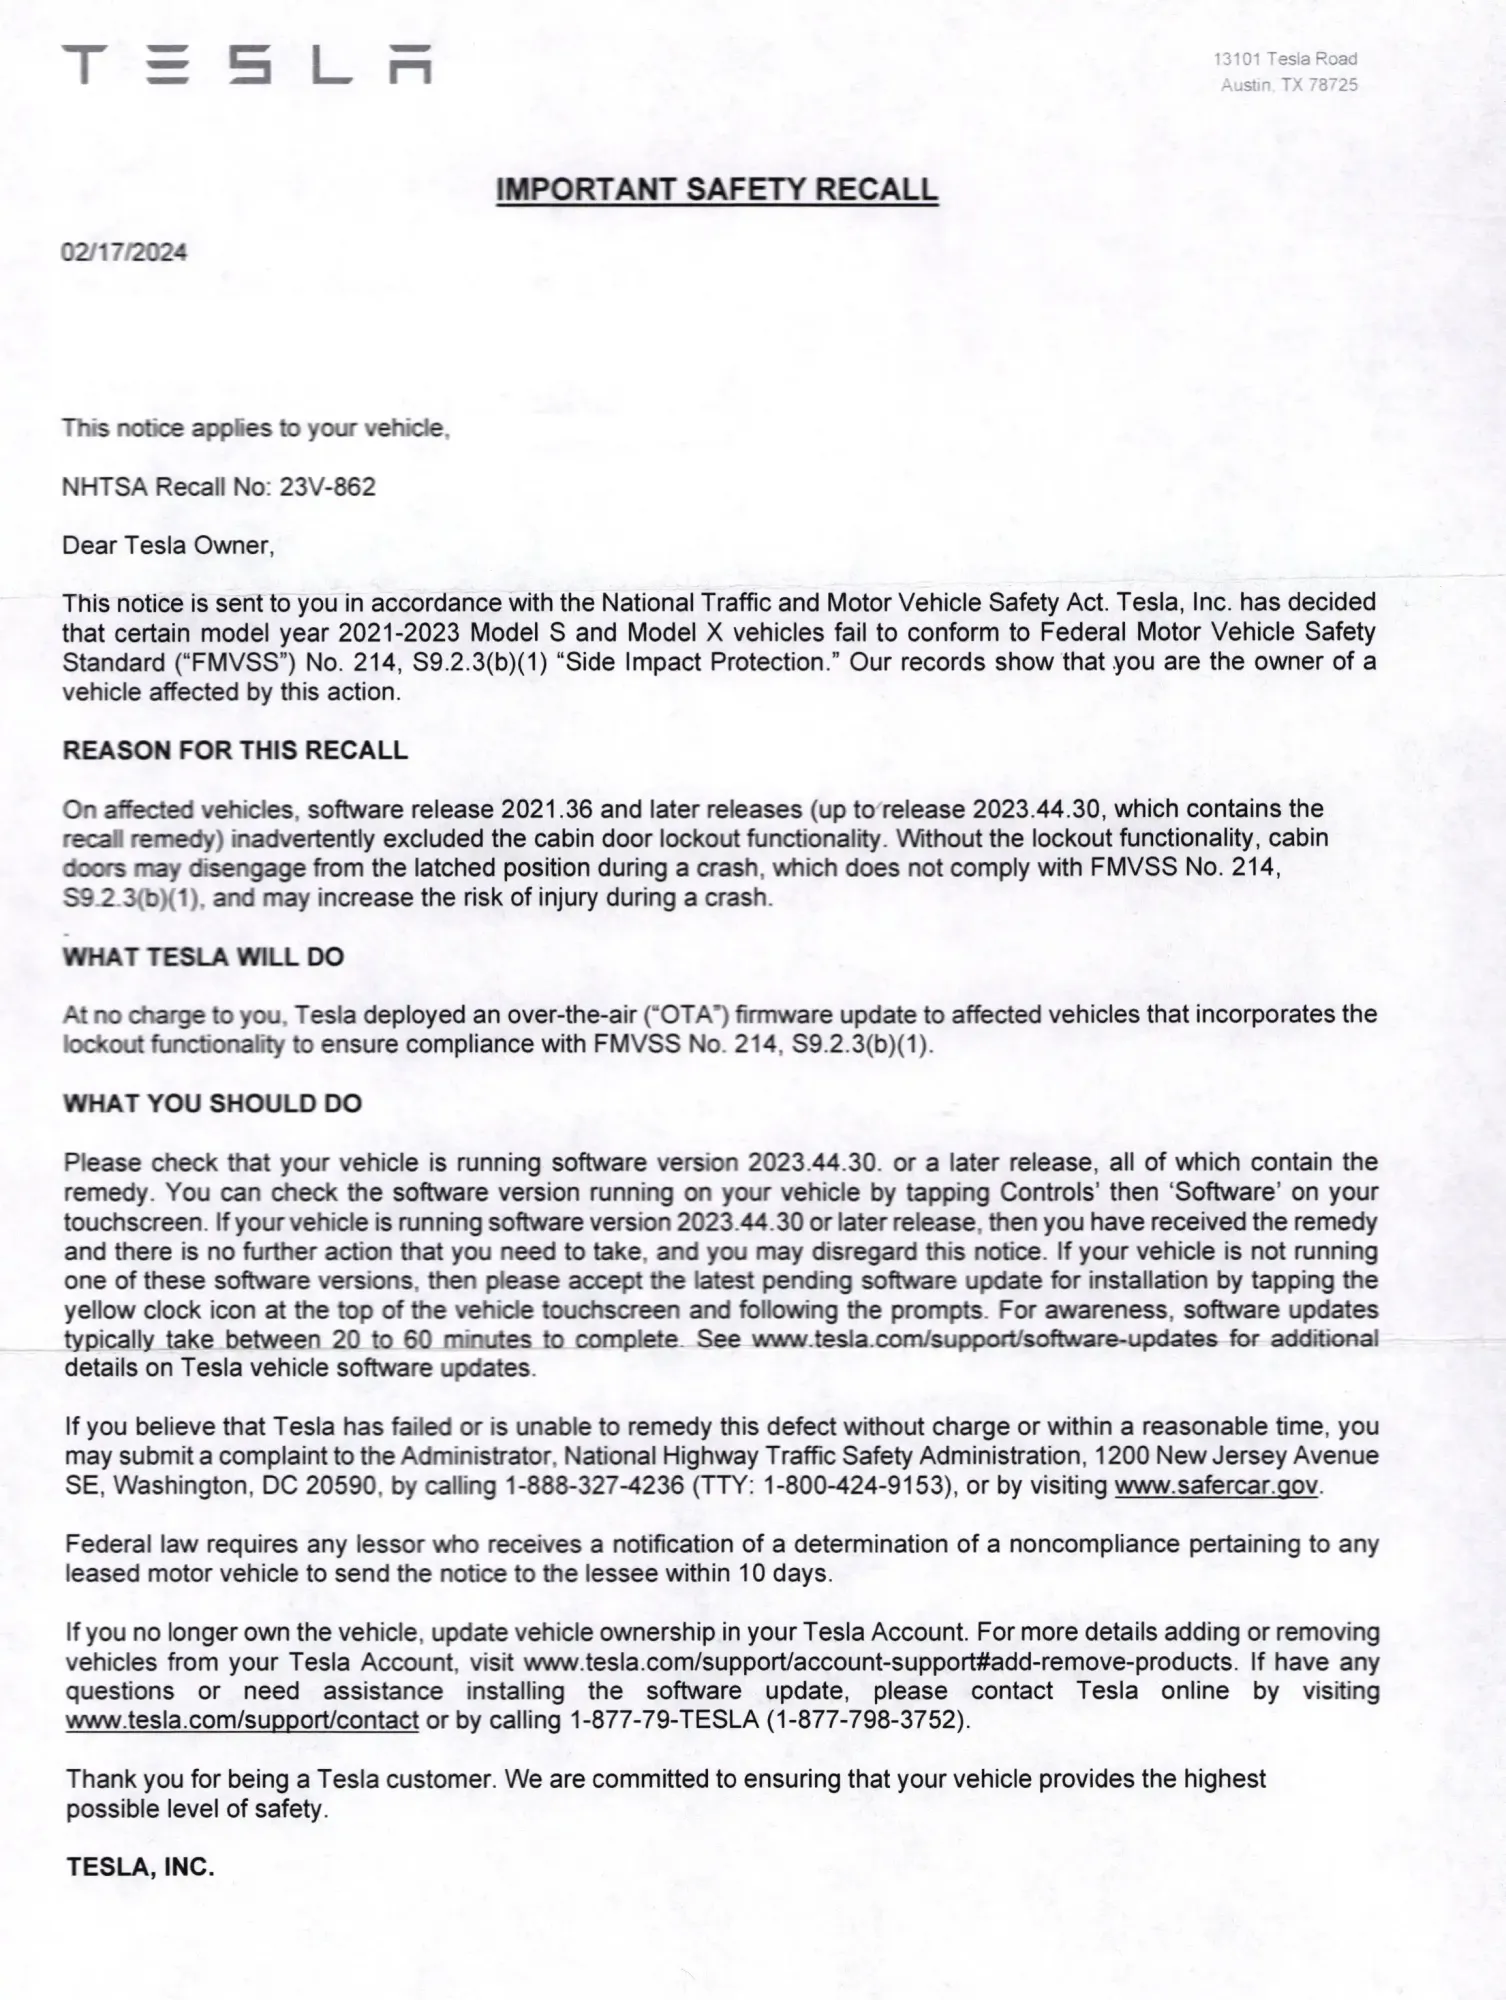 Tesla Safety Recall Letter Mailer 23v 862 Model X